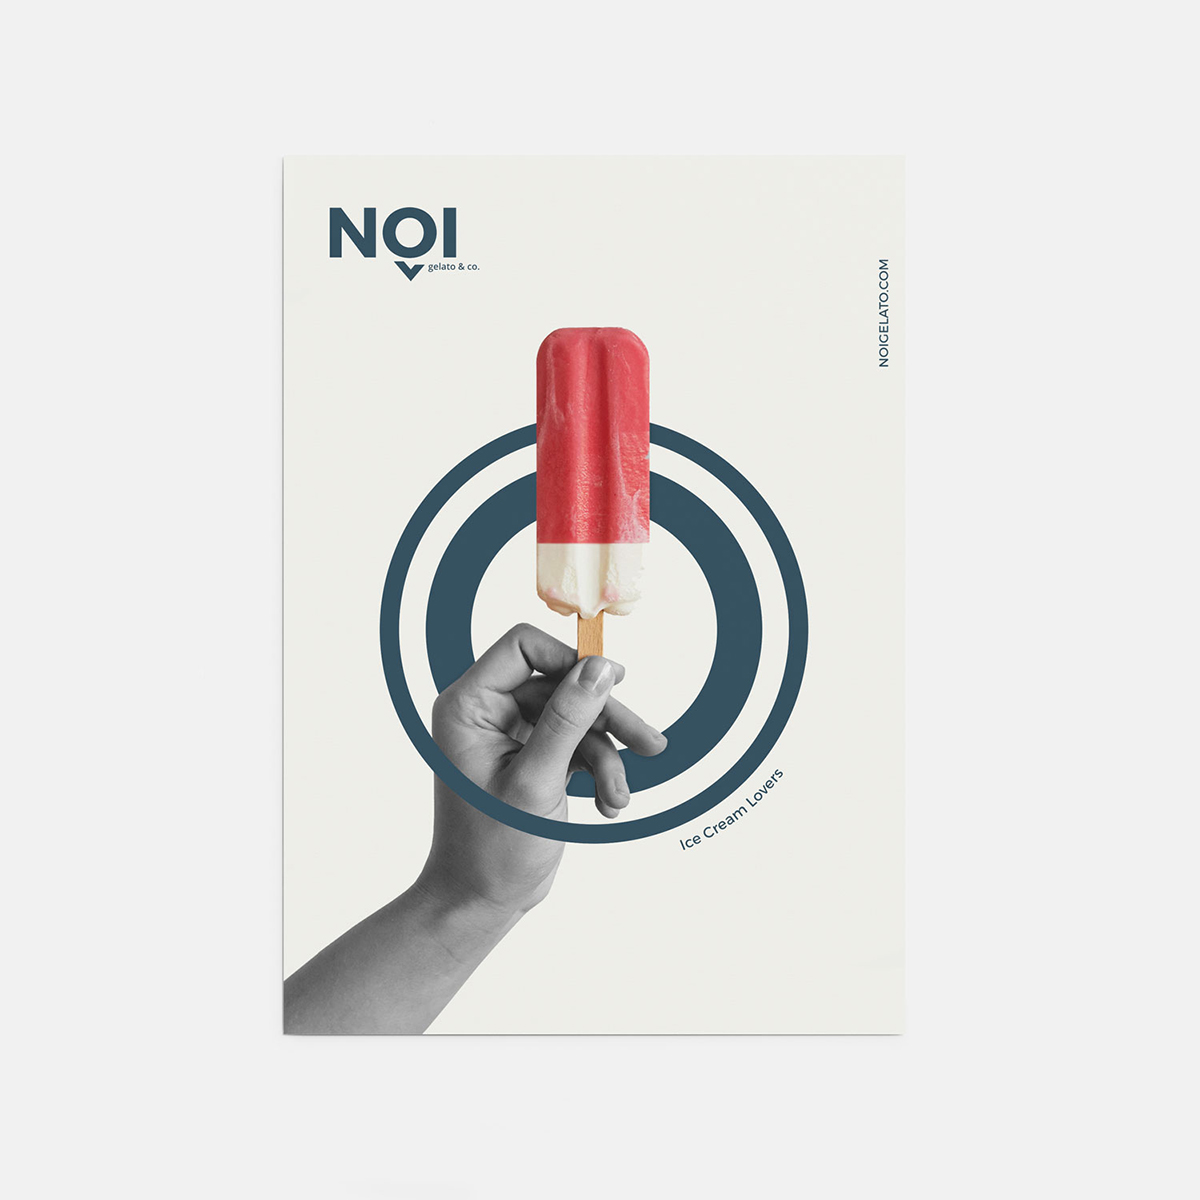 Diseño y desarrollo de identidad visual corporativa para NOI Gelato&Co. Diseño de poster.